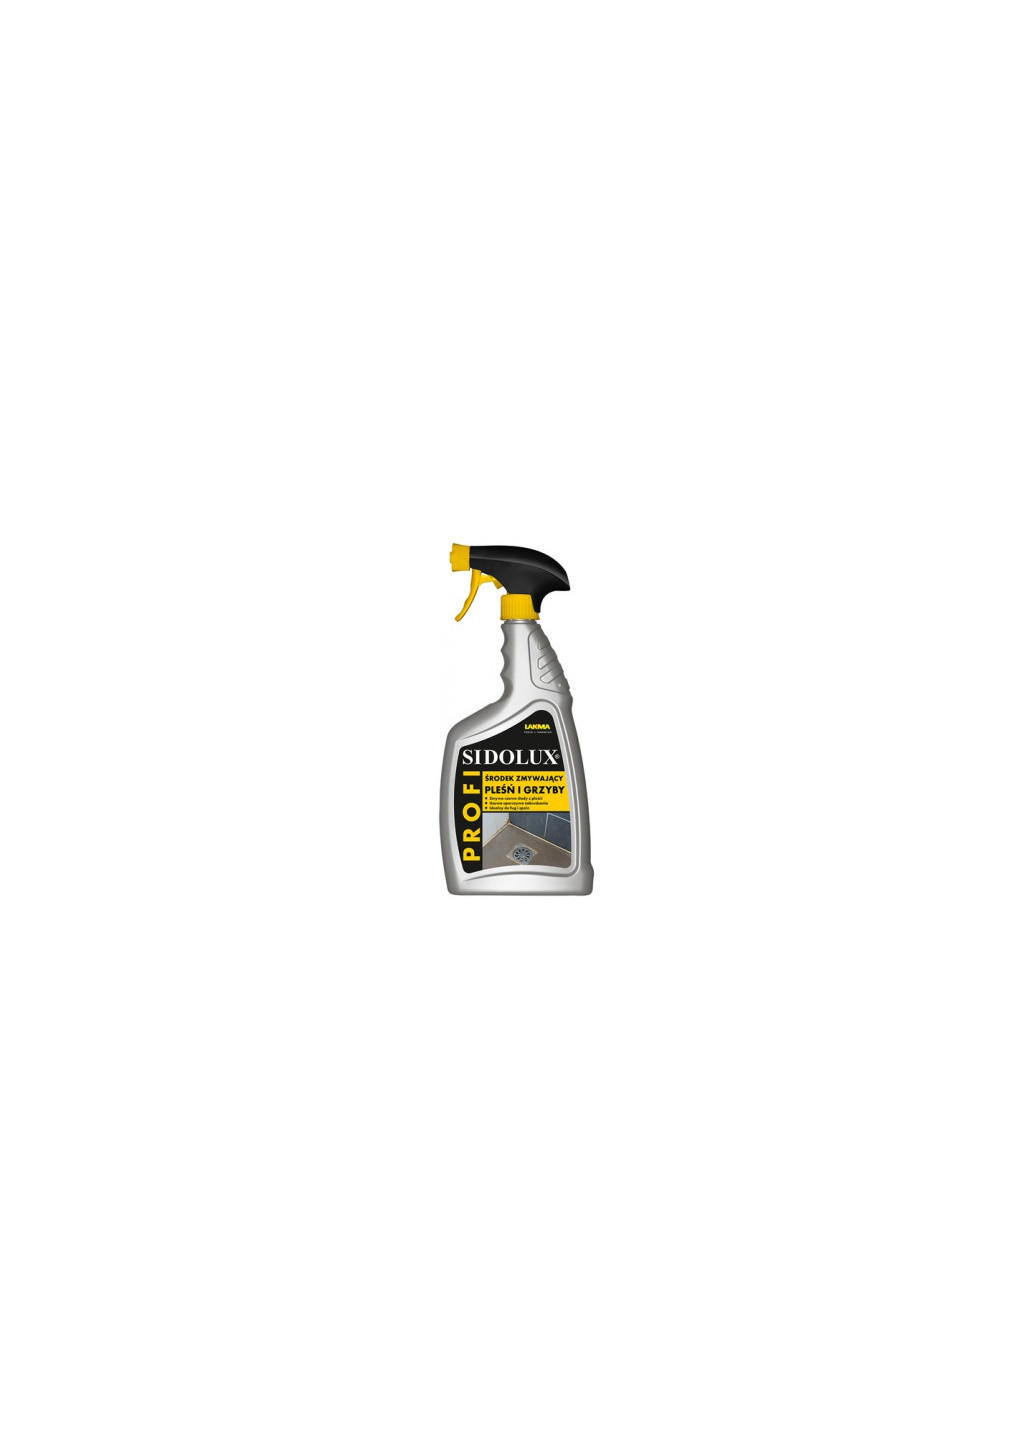 Професійний чистячий і дезинфікуючий засіб проти цвілі і грибка Sidolux Profi протигрибковий очищувач (3022) Lakma (262454386)